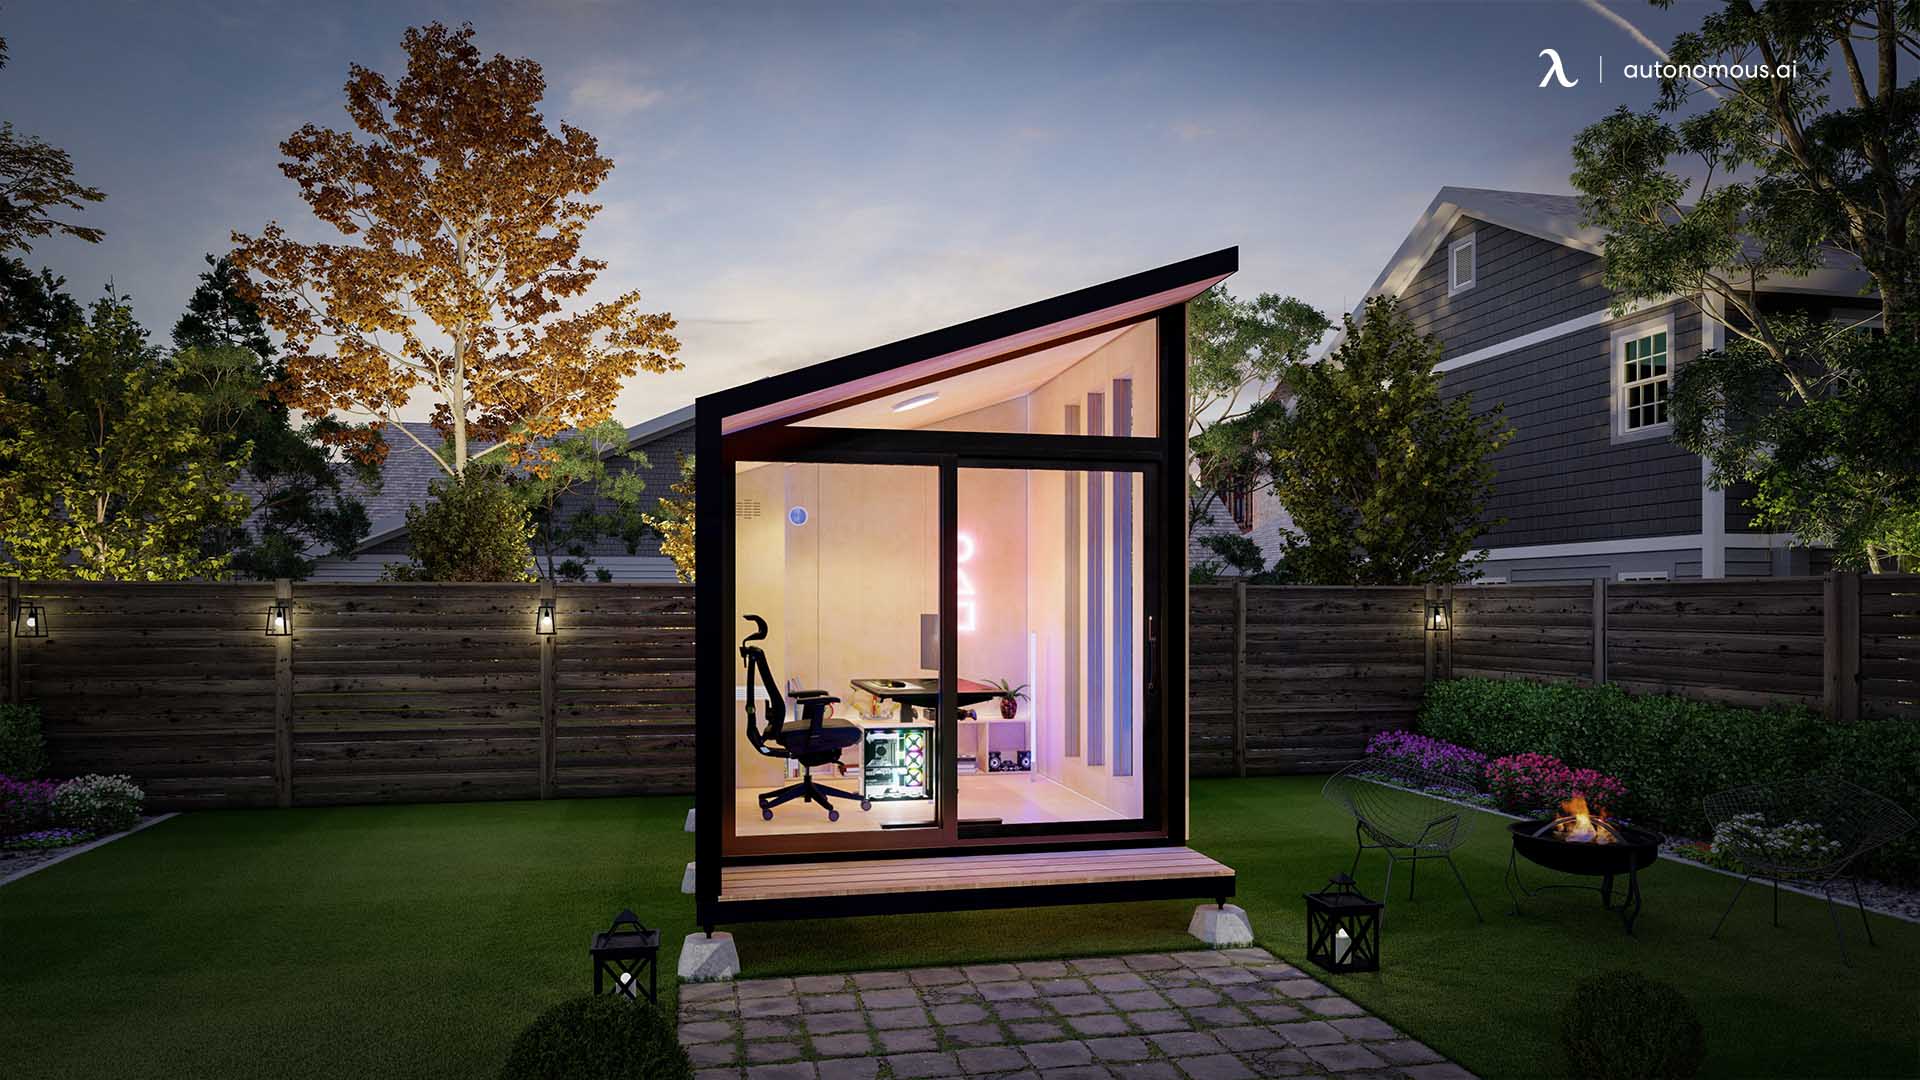 Autonomous GamePod luxury garden shed